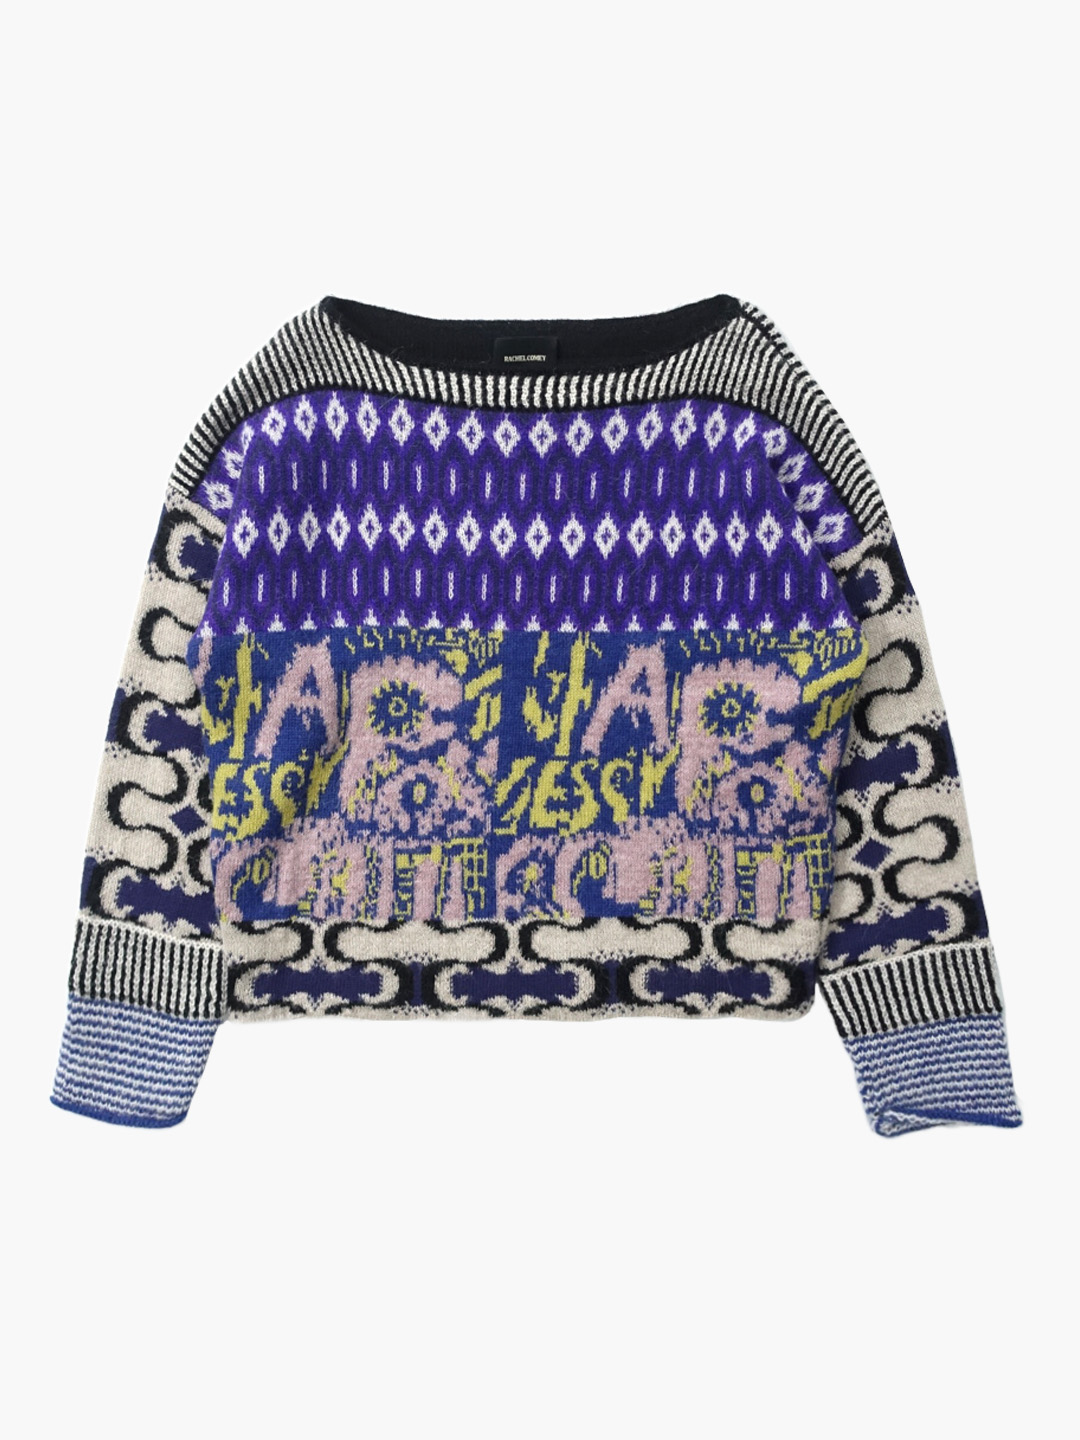 RACHEL COMEYPattern knit top